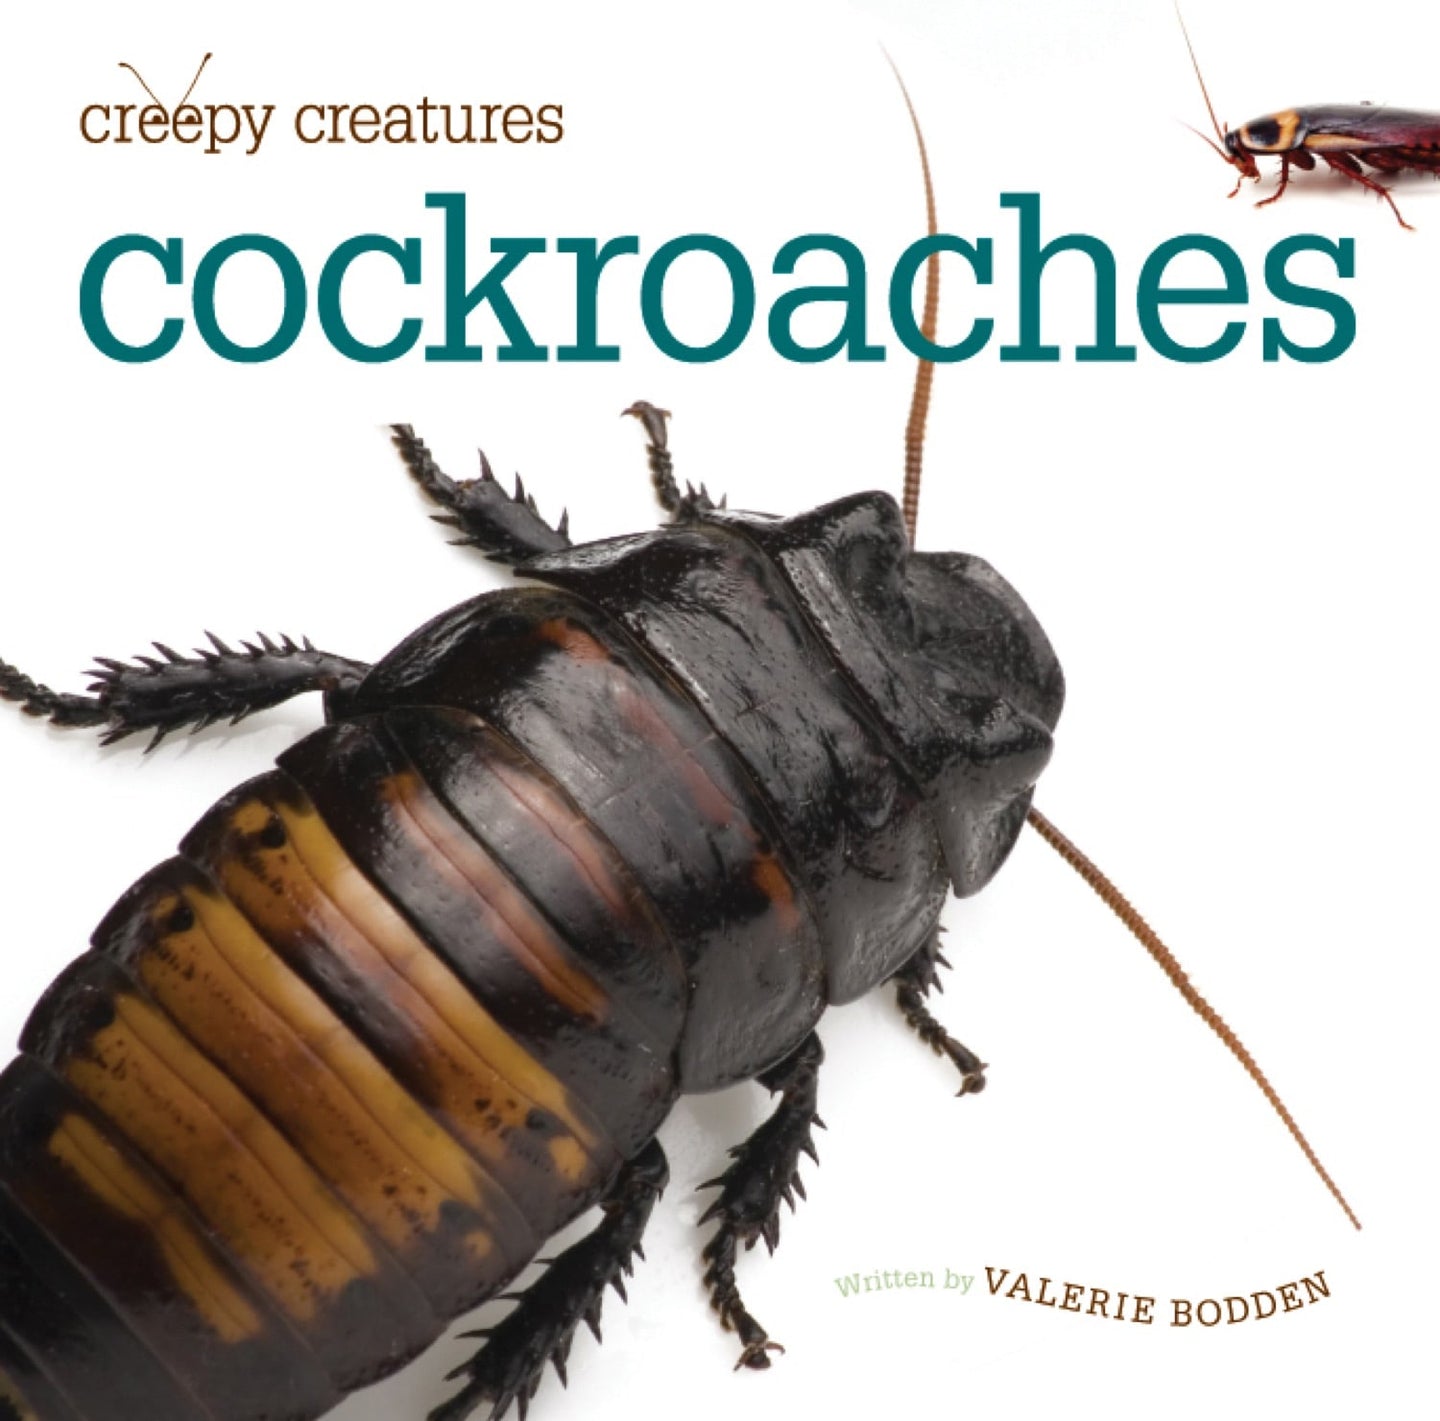 Creepy Creatures: Cockroaches